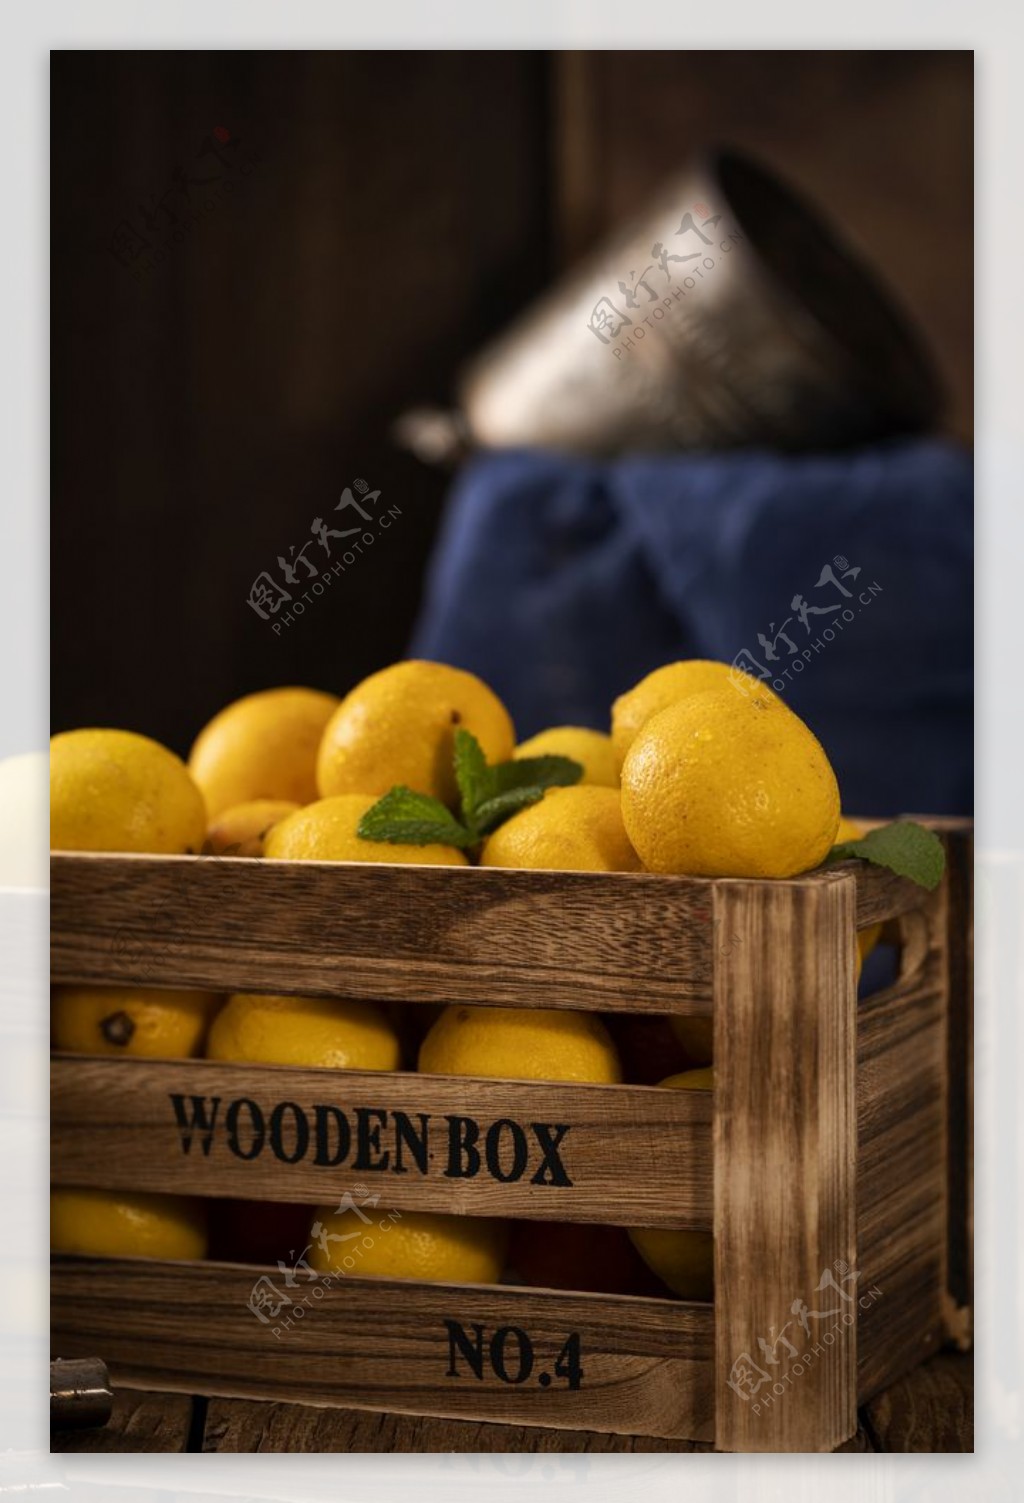 柠檬水果果实背景海报素材图片